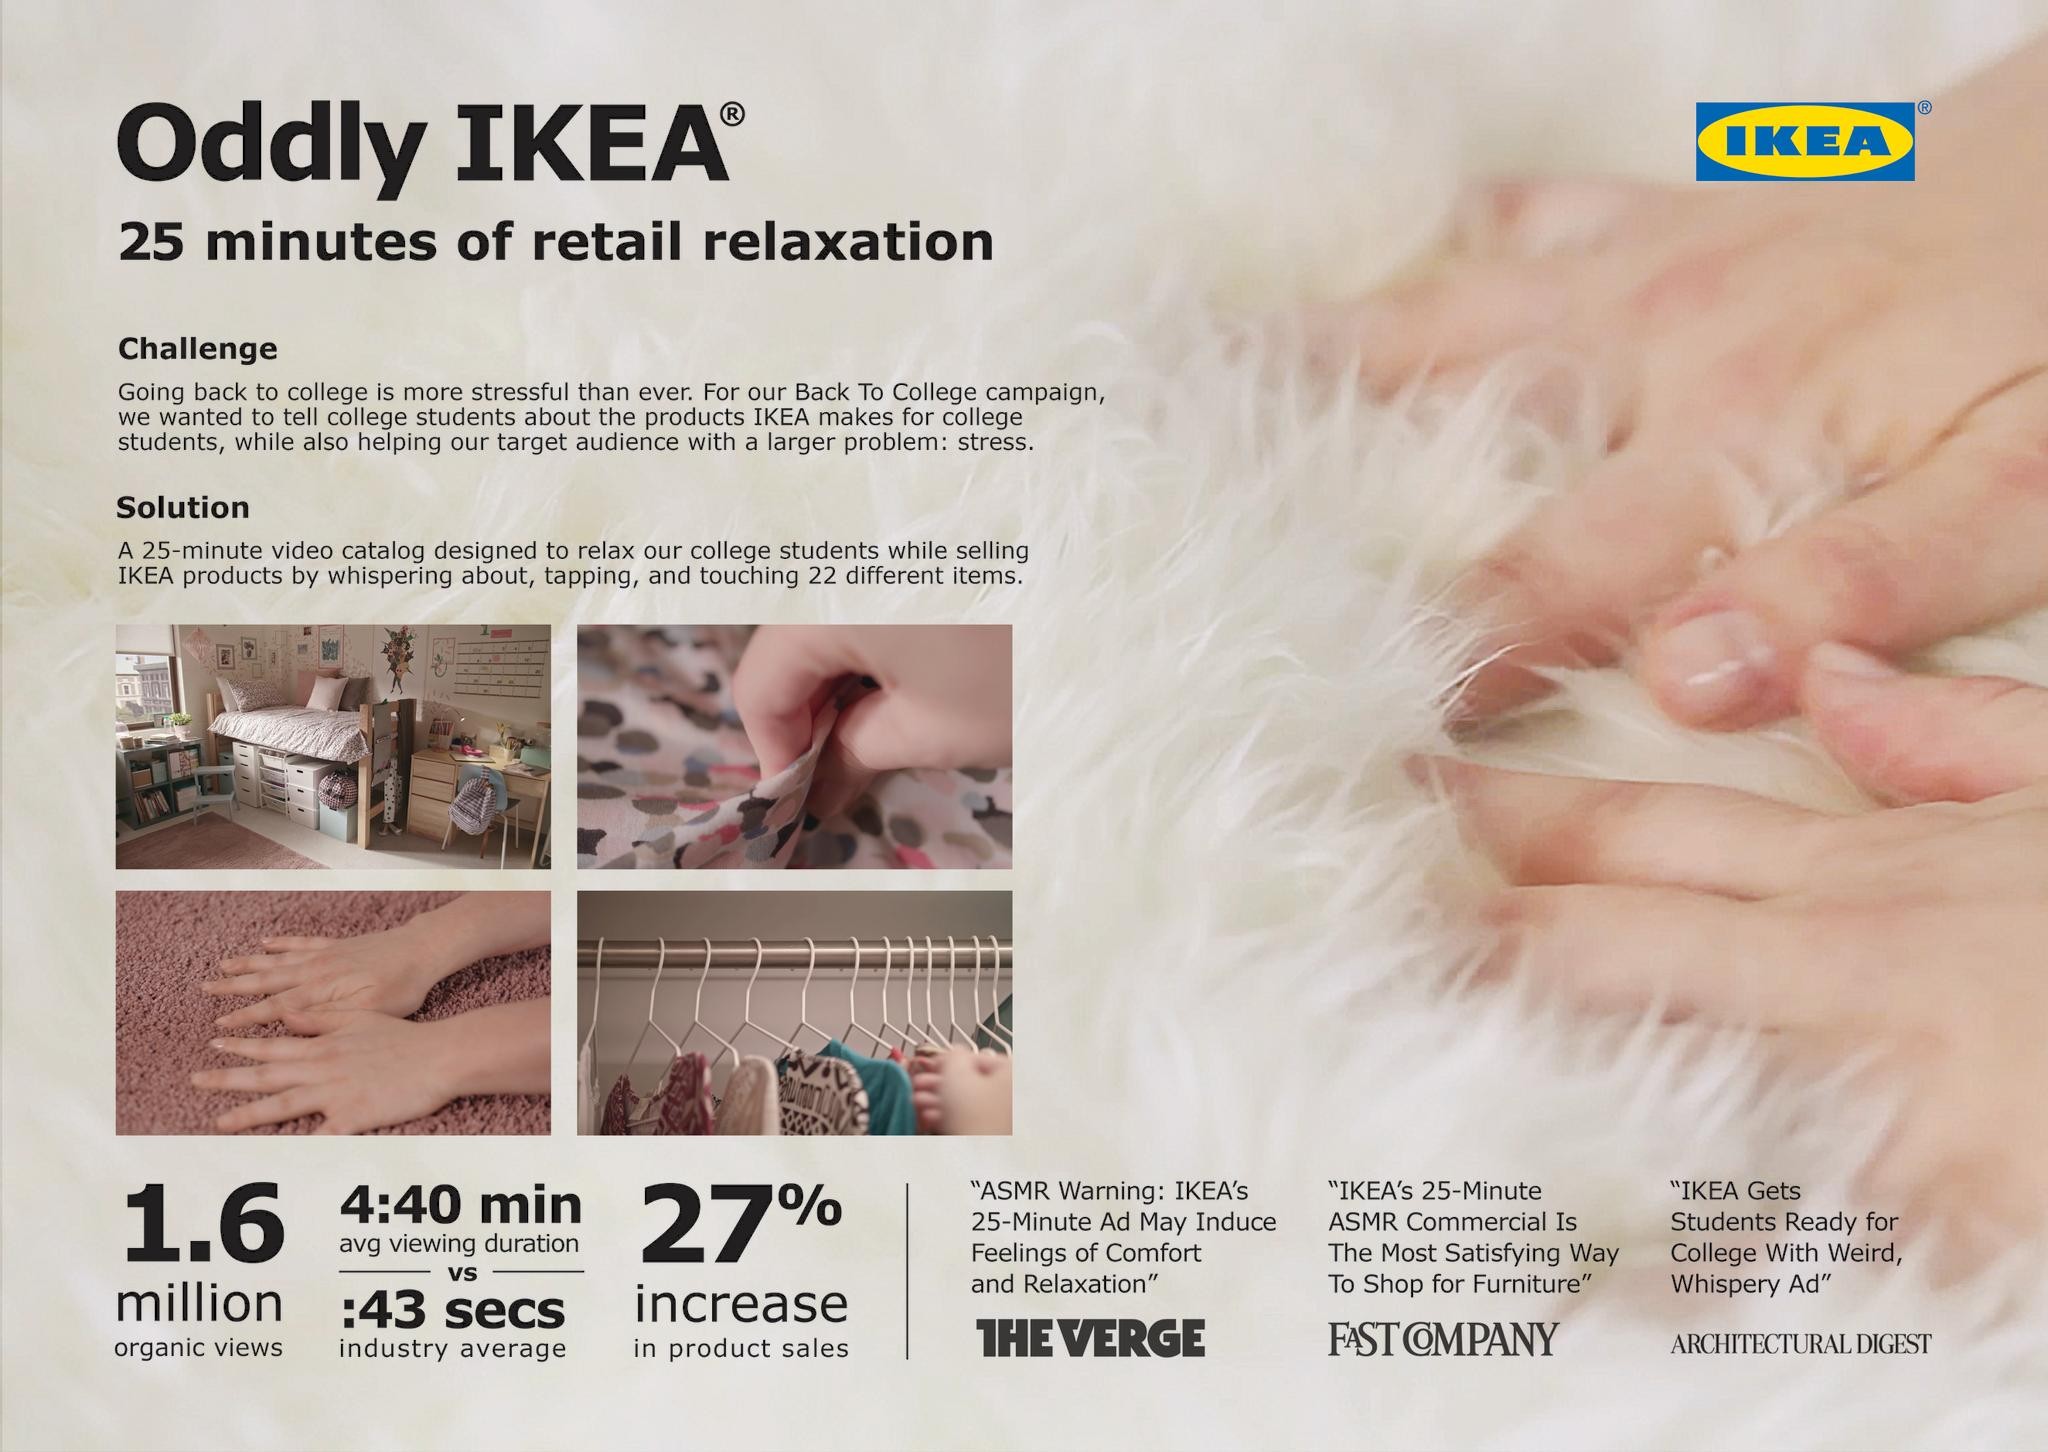 Oddly IKEA